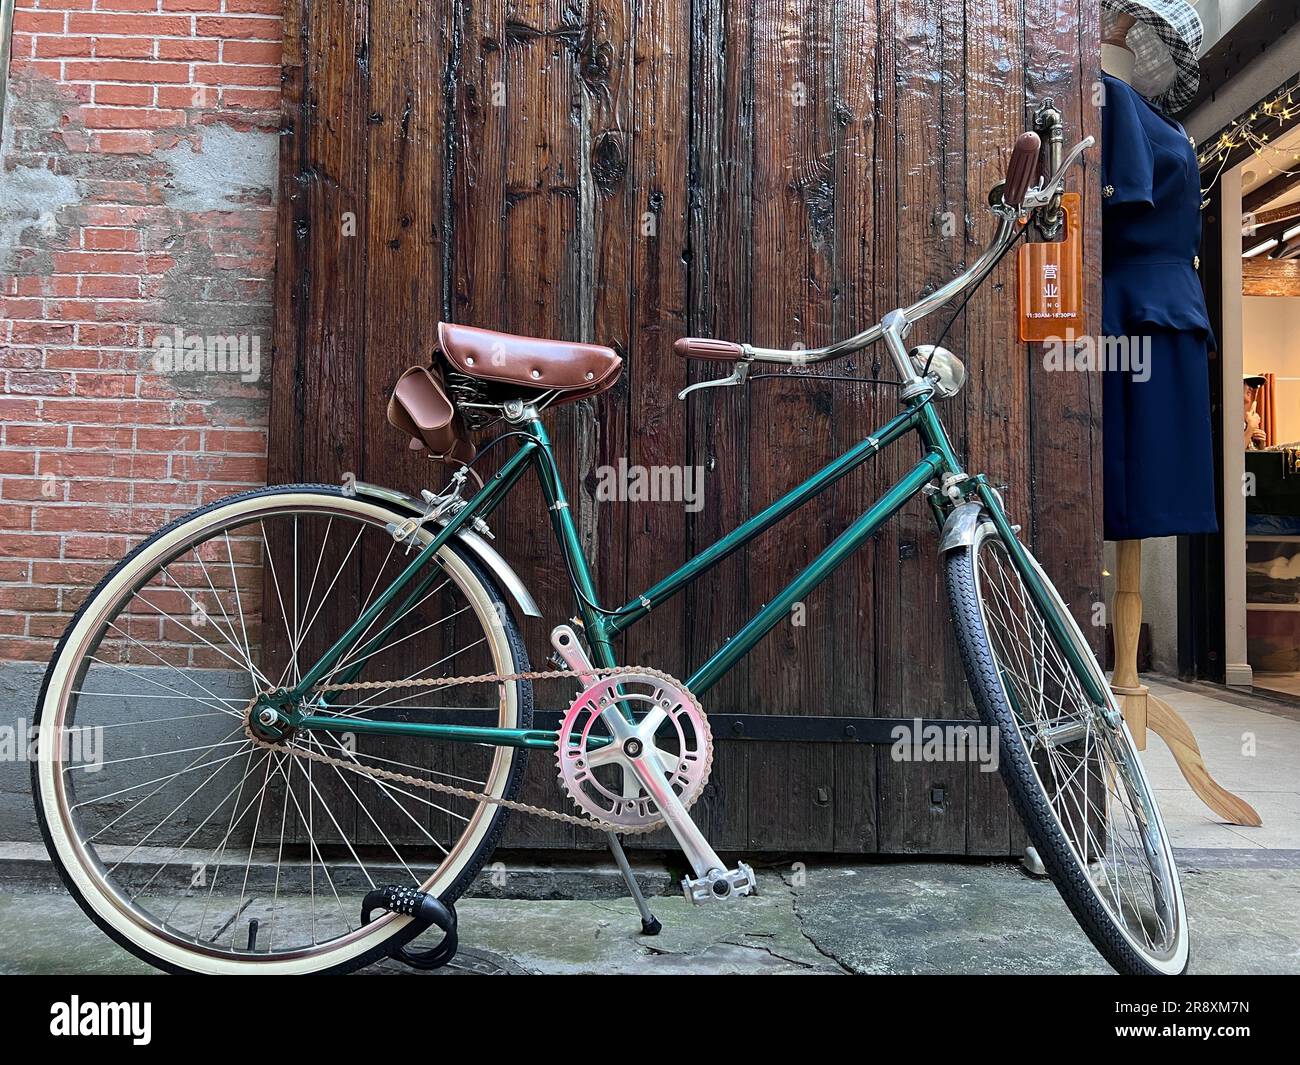 Ce vélo de style vintage est doté d'une selle en cuir marron classique, de poignées de guidon et d'un siège confortable pour les manèges prolongés Banque D'Images